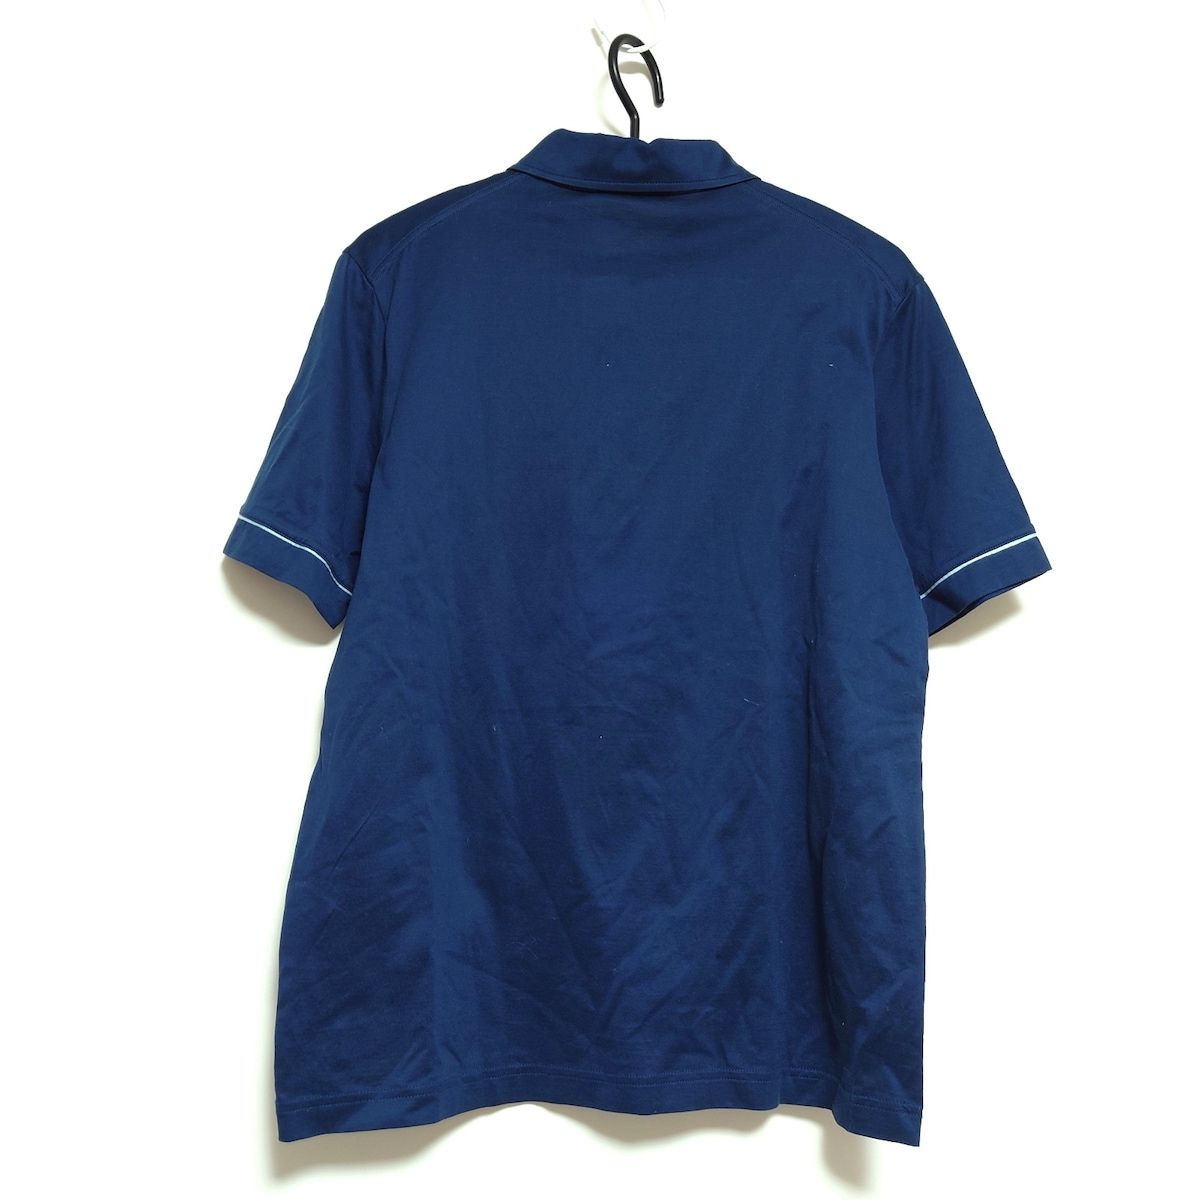 PRADA(プラダ) 半袖ポロシャツ サイズL メンズ - ネイビー×ライトブルー